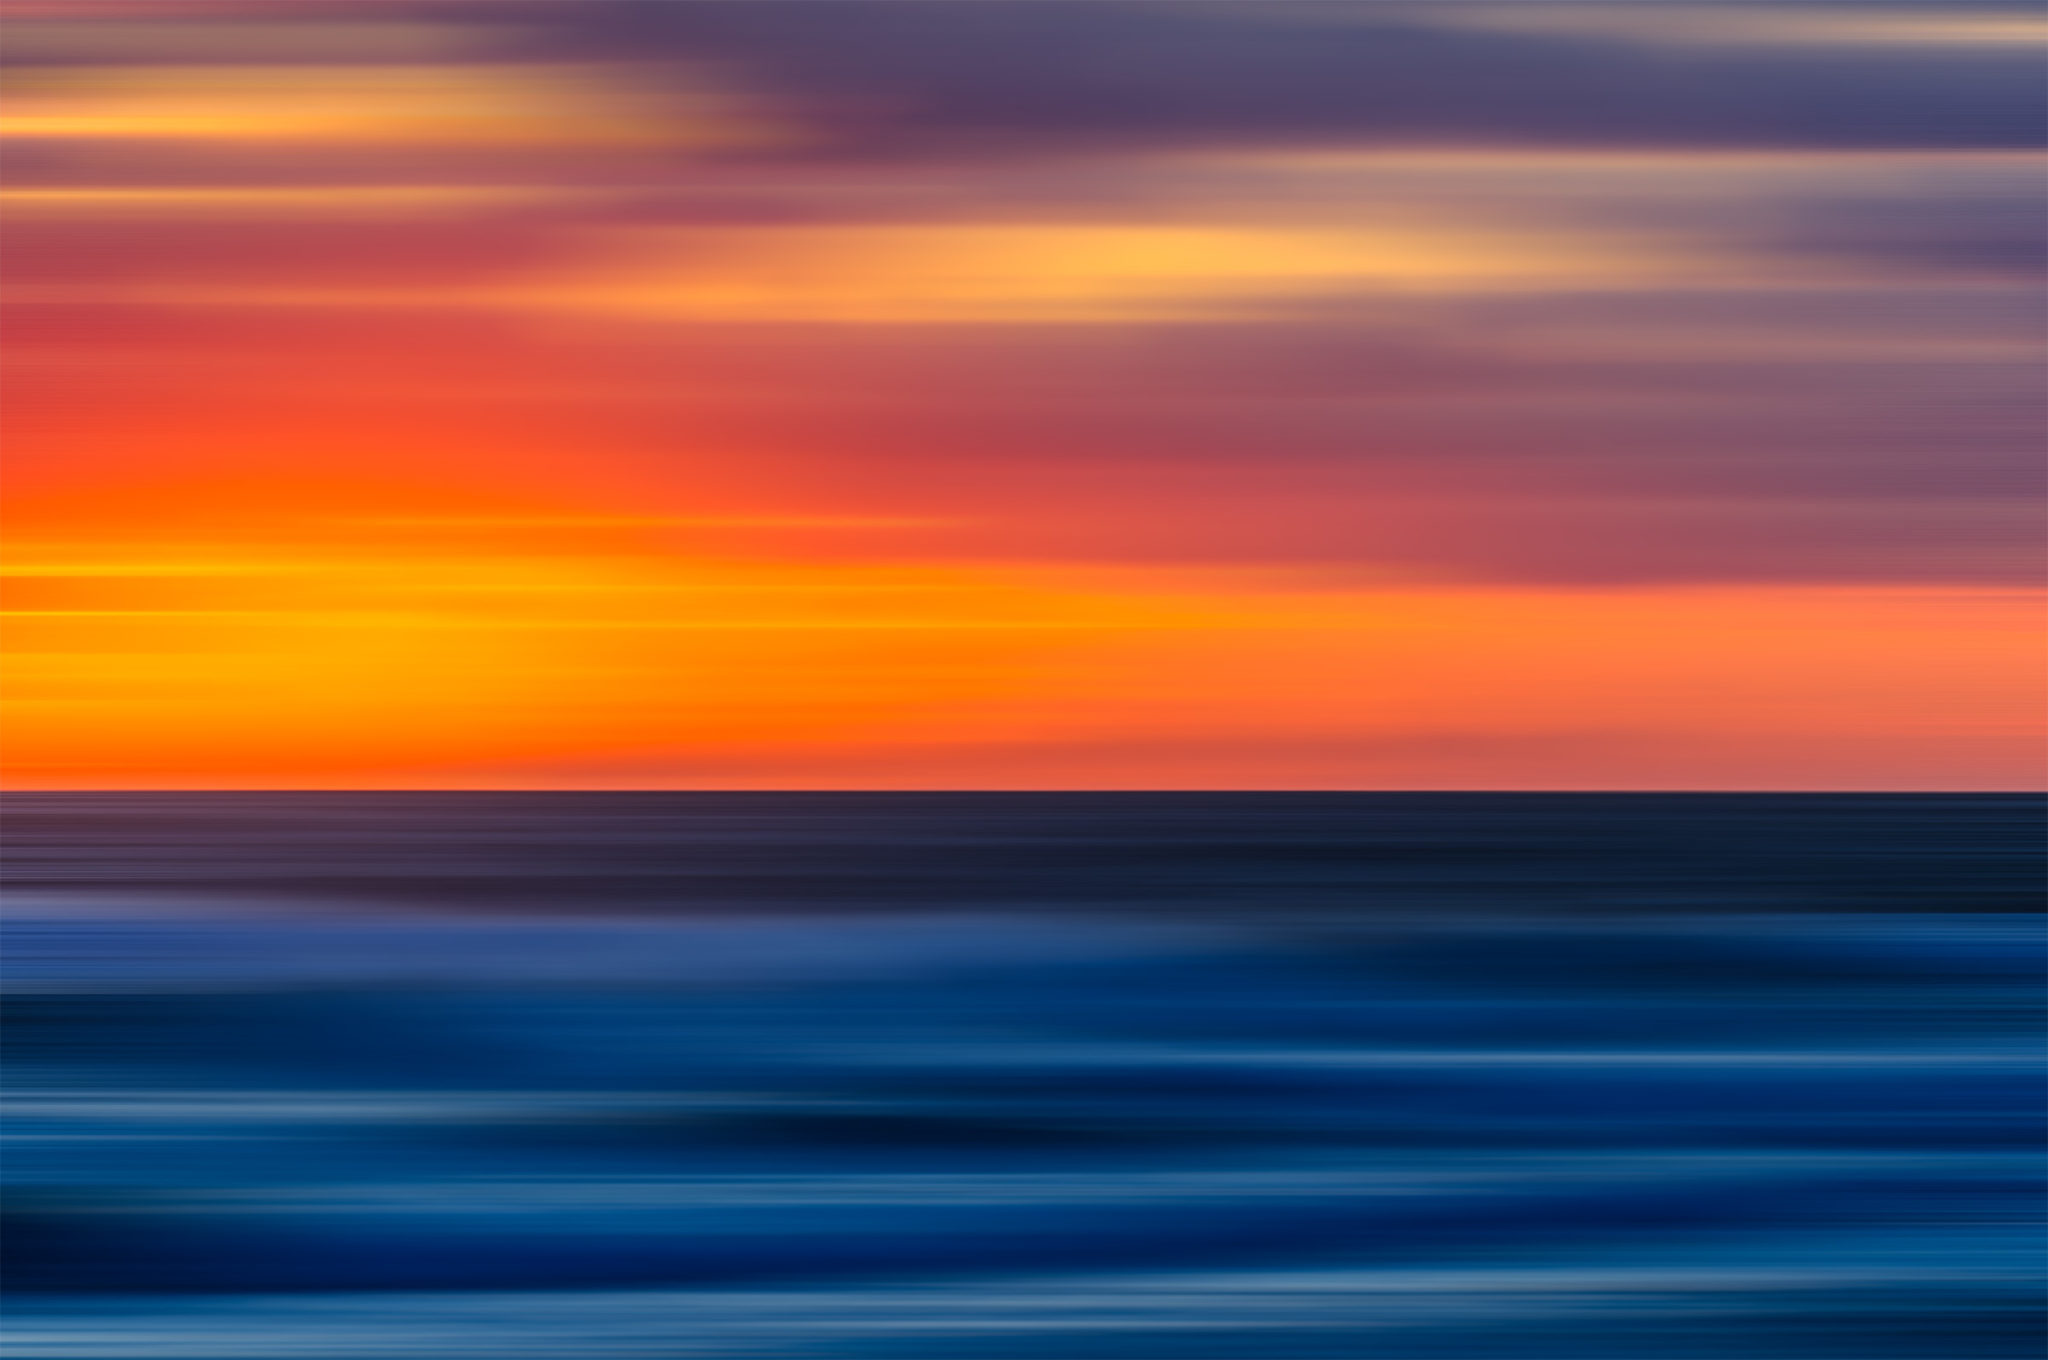 Nantucket sunset over the Atlantic drag